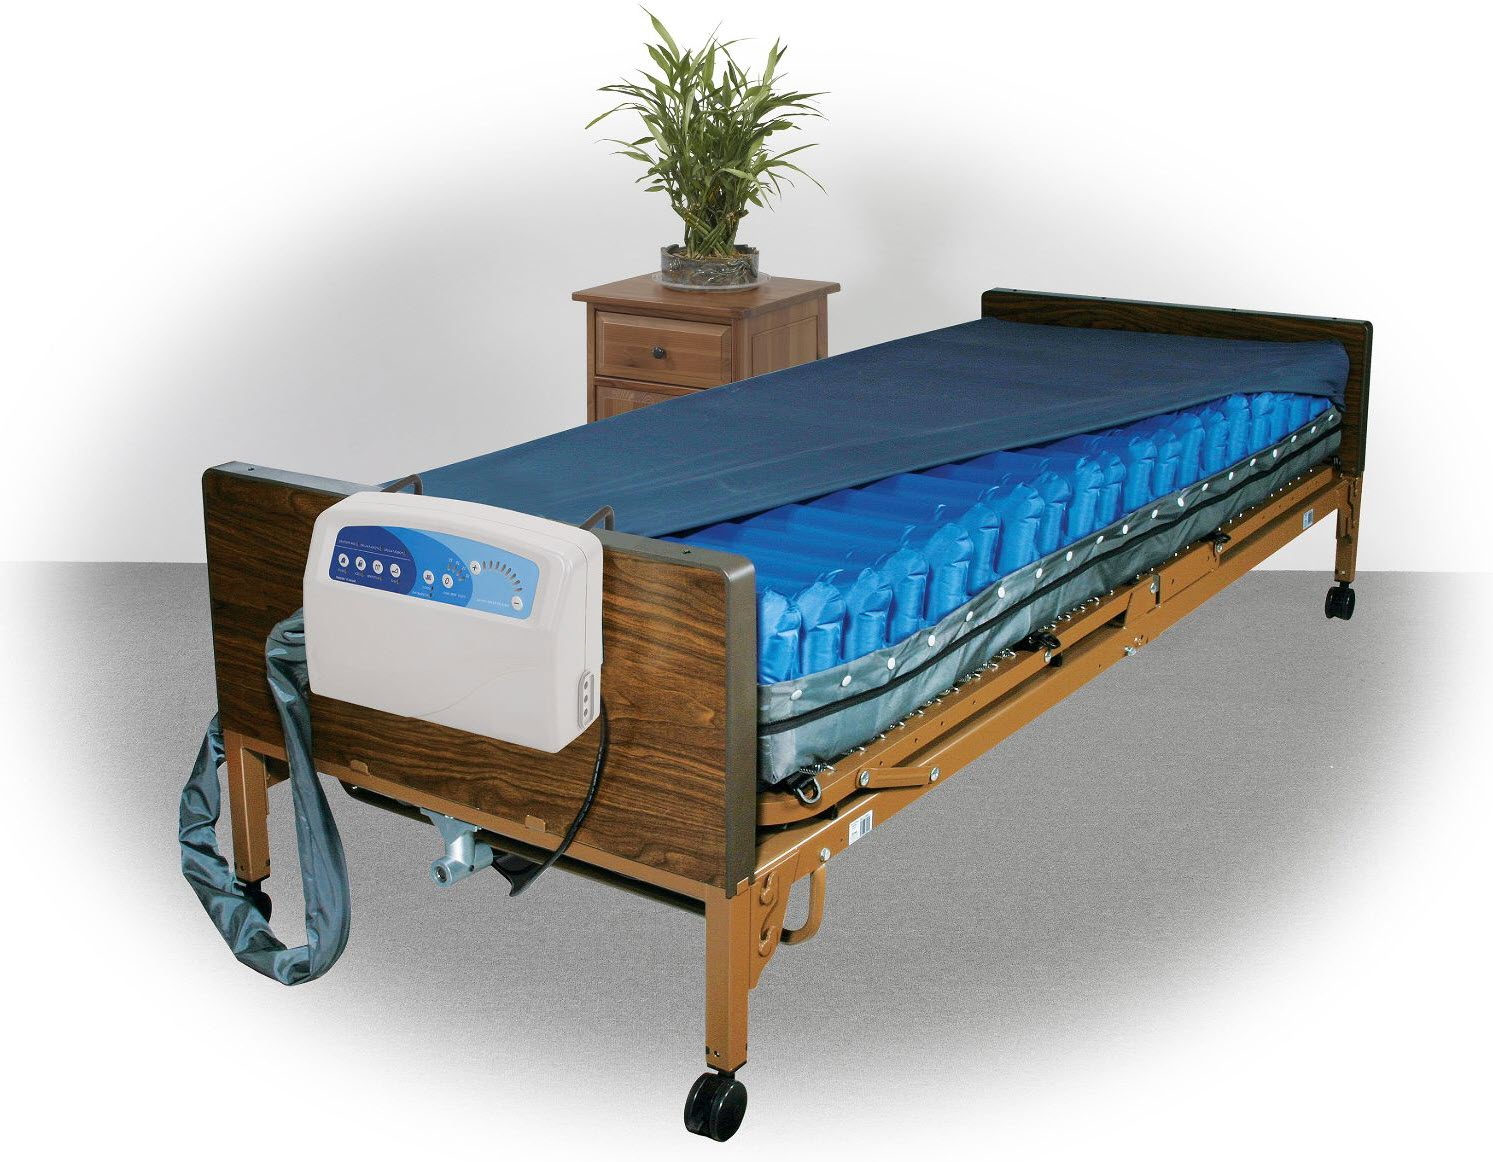 sleepsafe bed mattress replacement